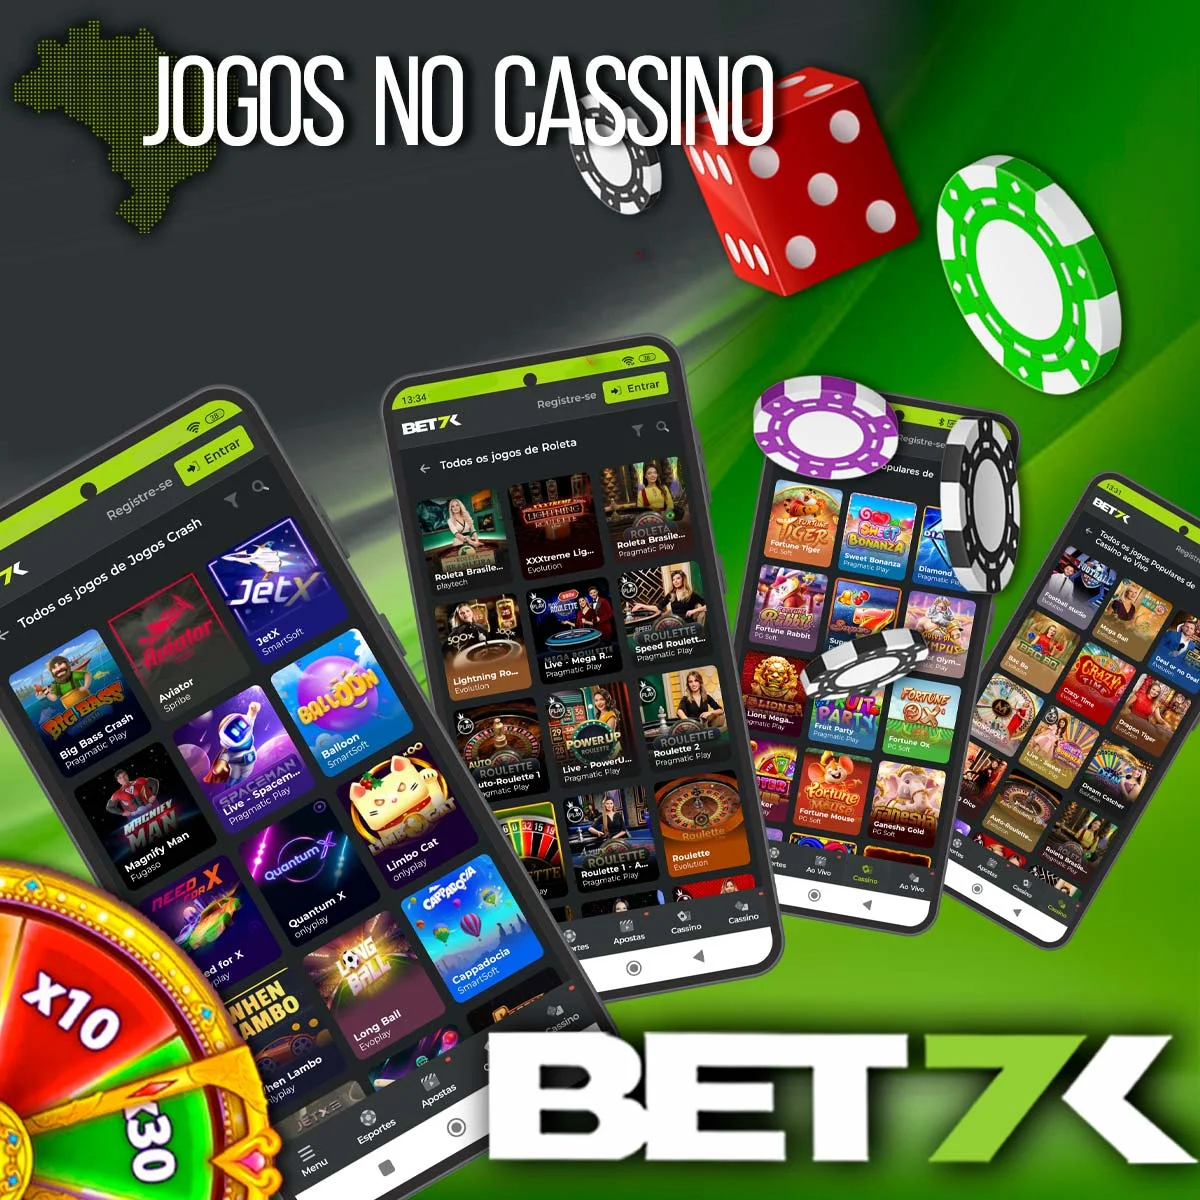 Revisão dos jogos de cassino da casa de apostas Bet7k no Brasil